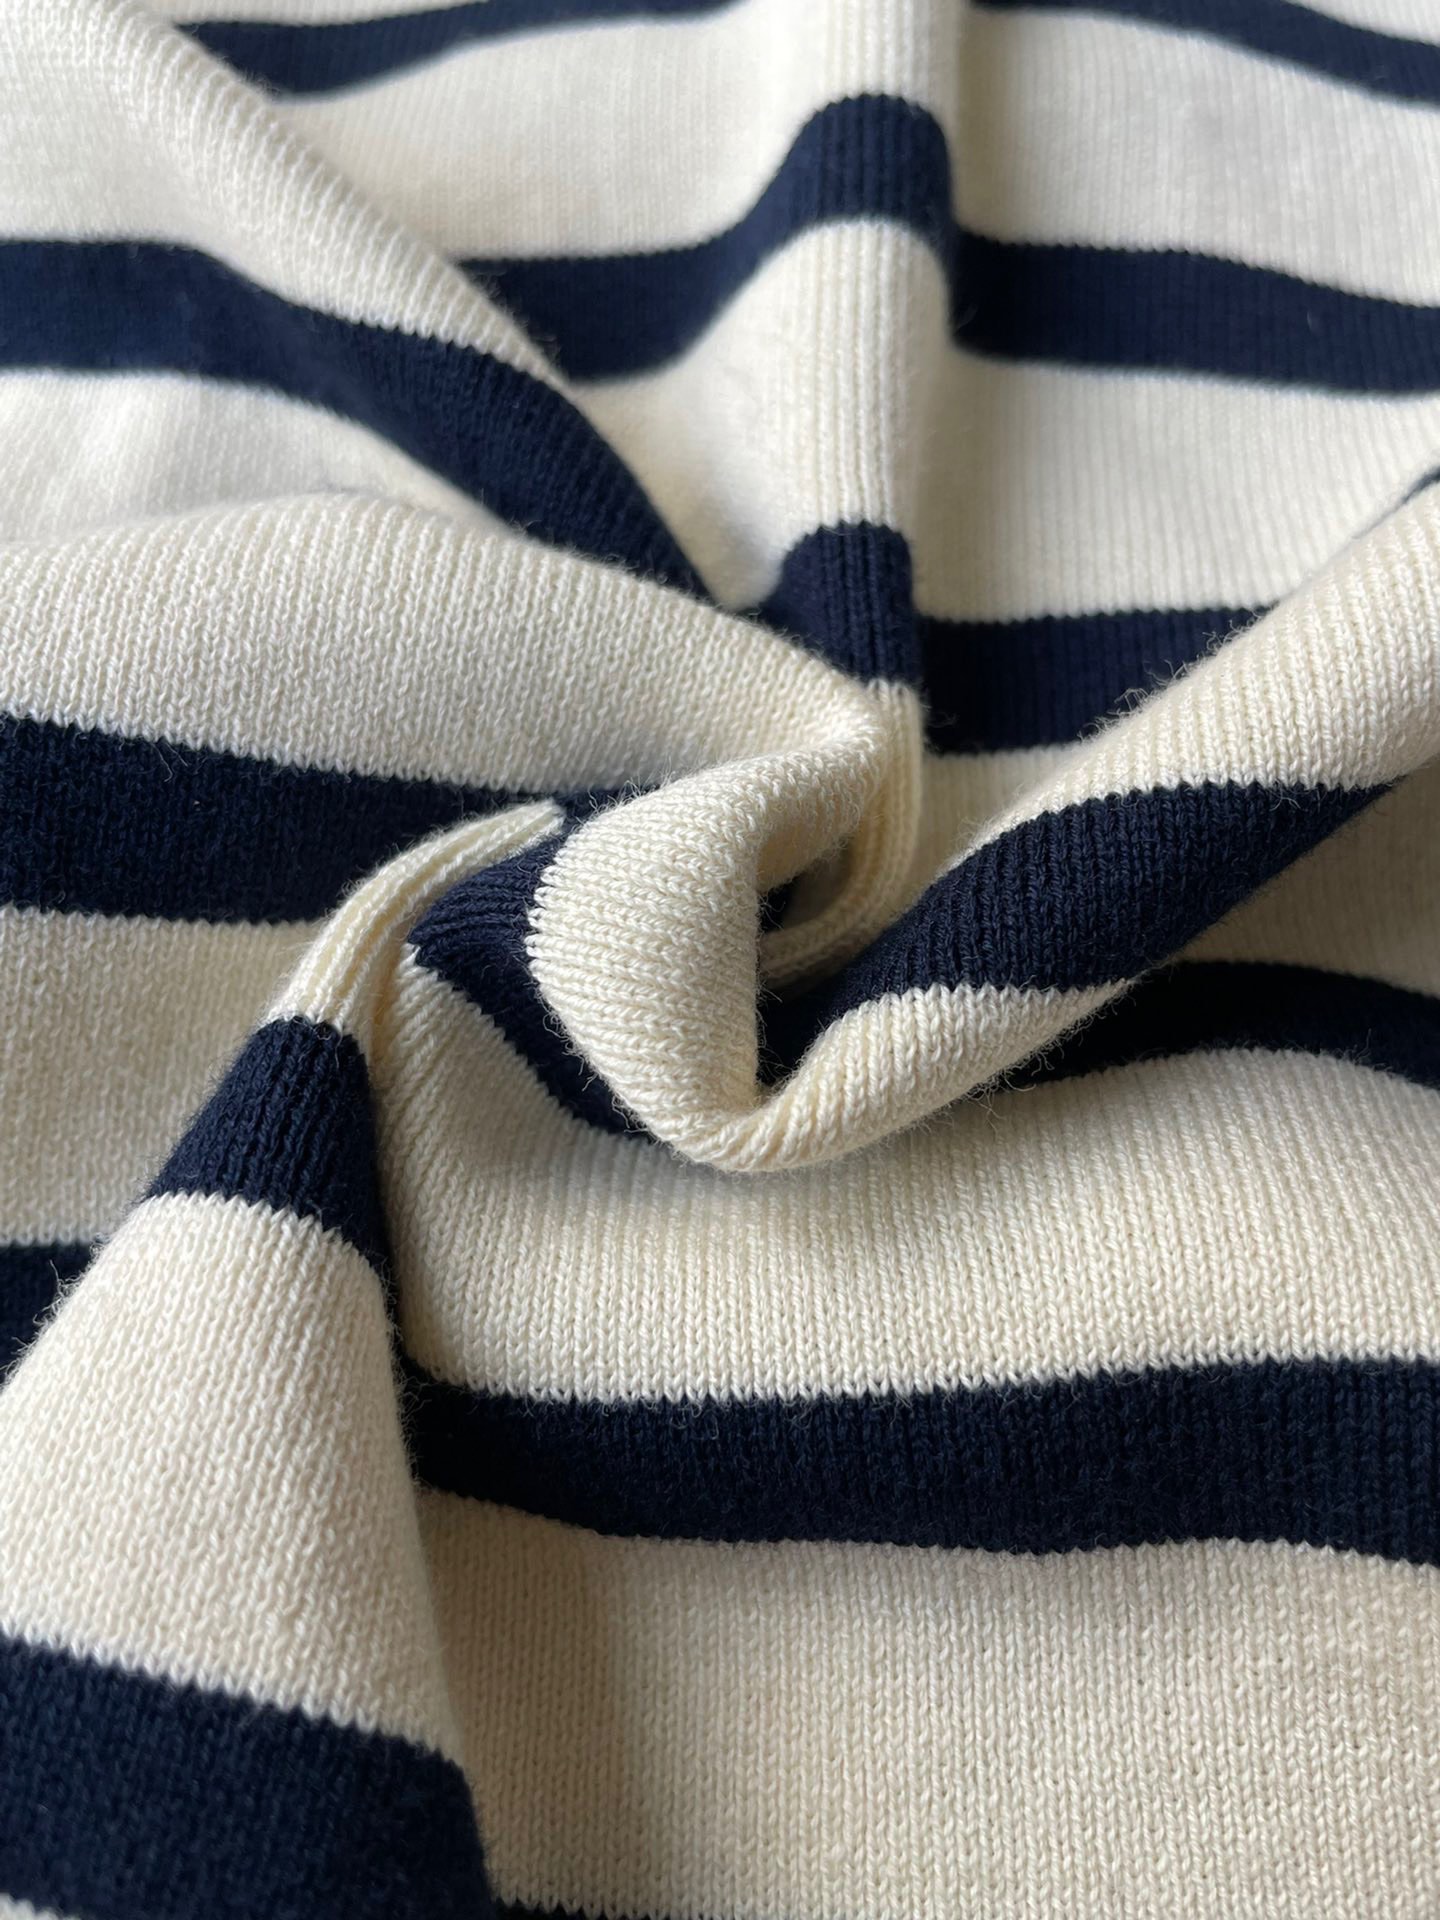 按照gw的描述吧紧密的纺纱工艺织造，手感密实，清爽且舒适